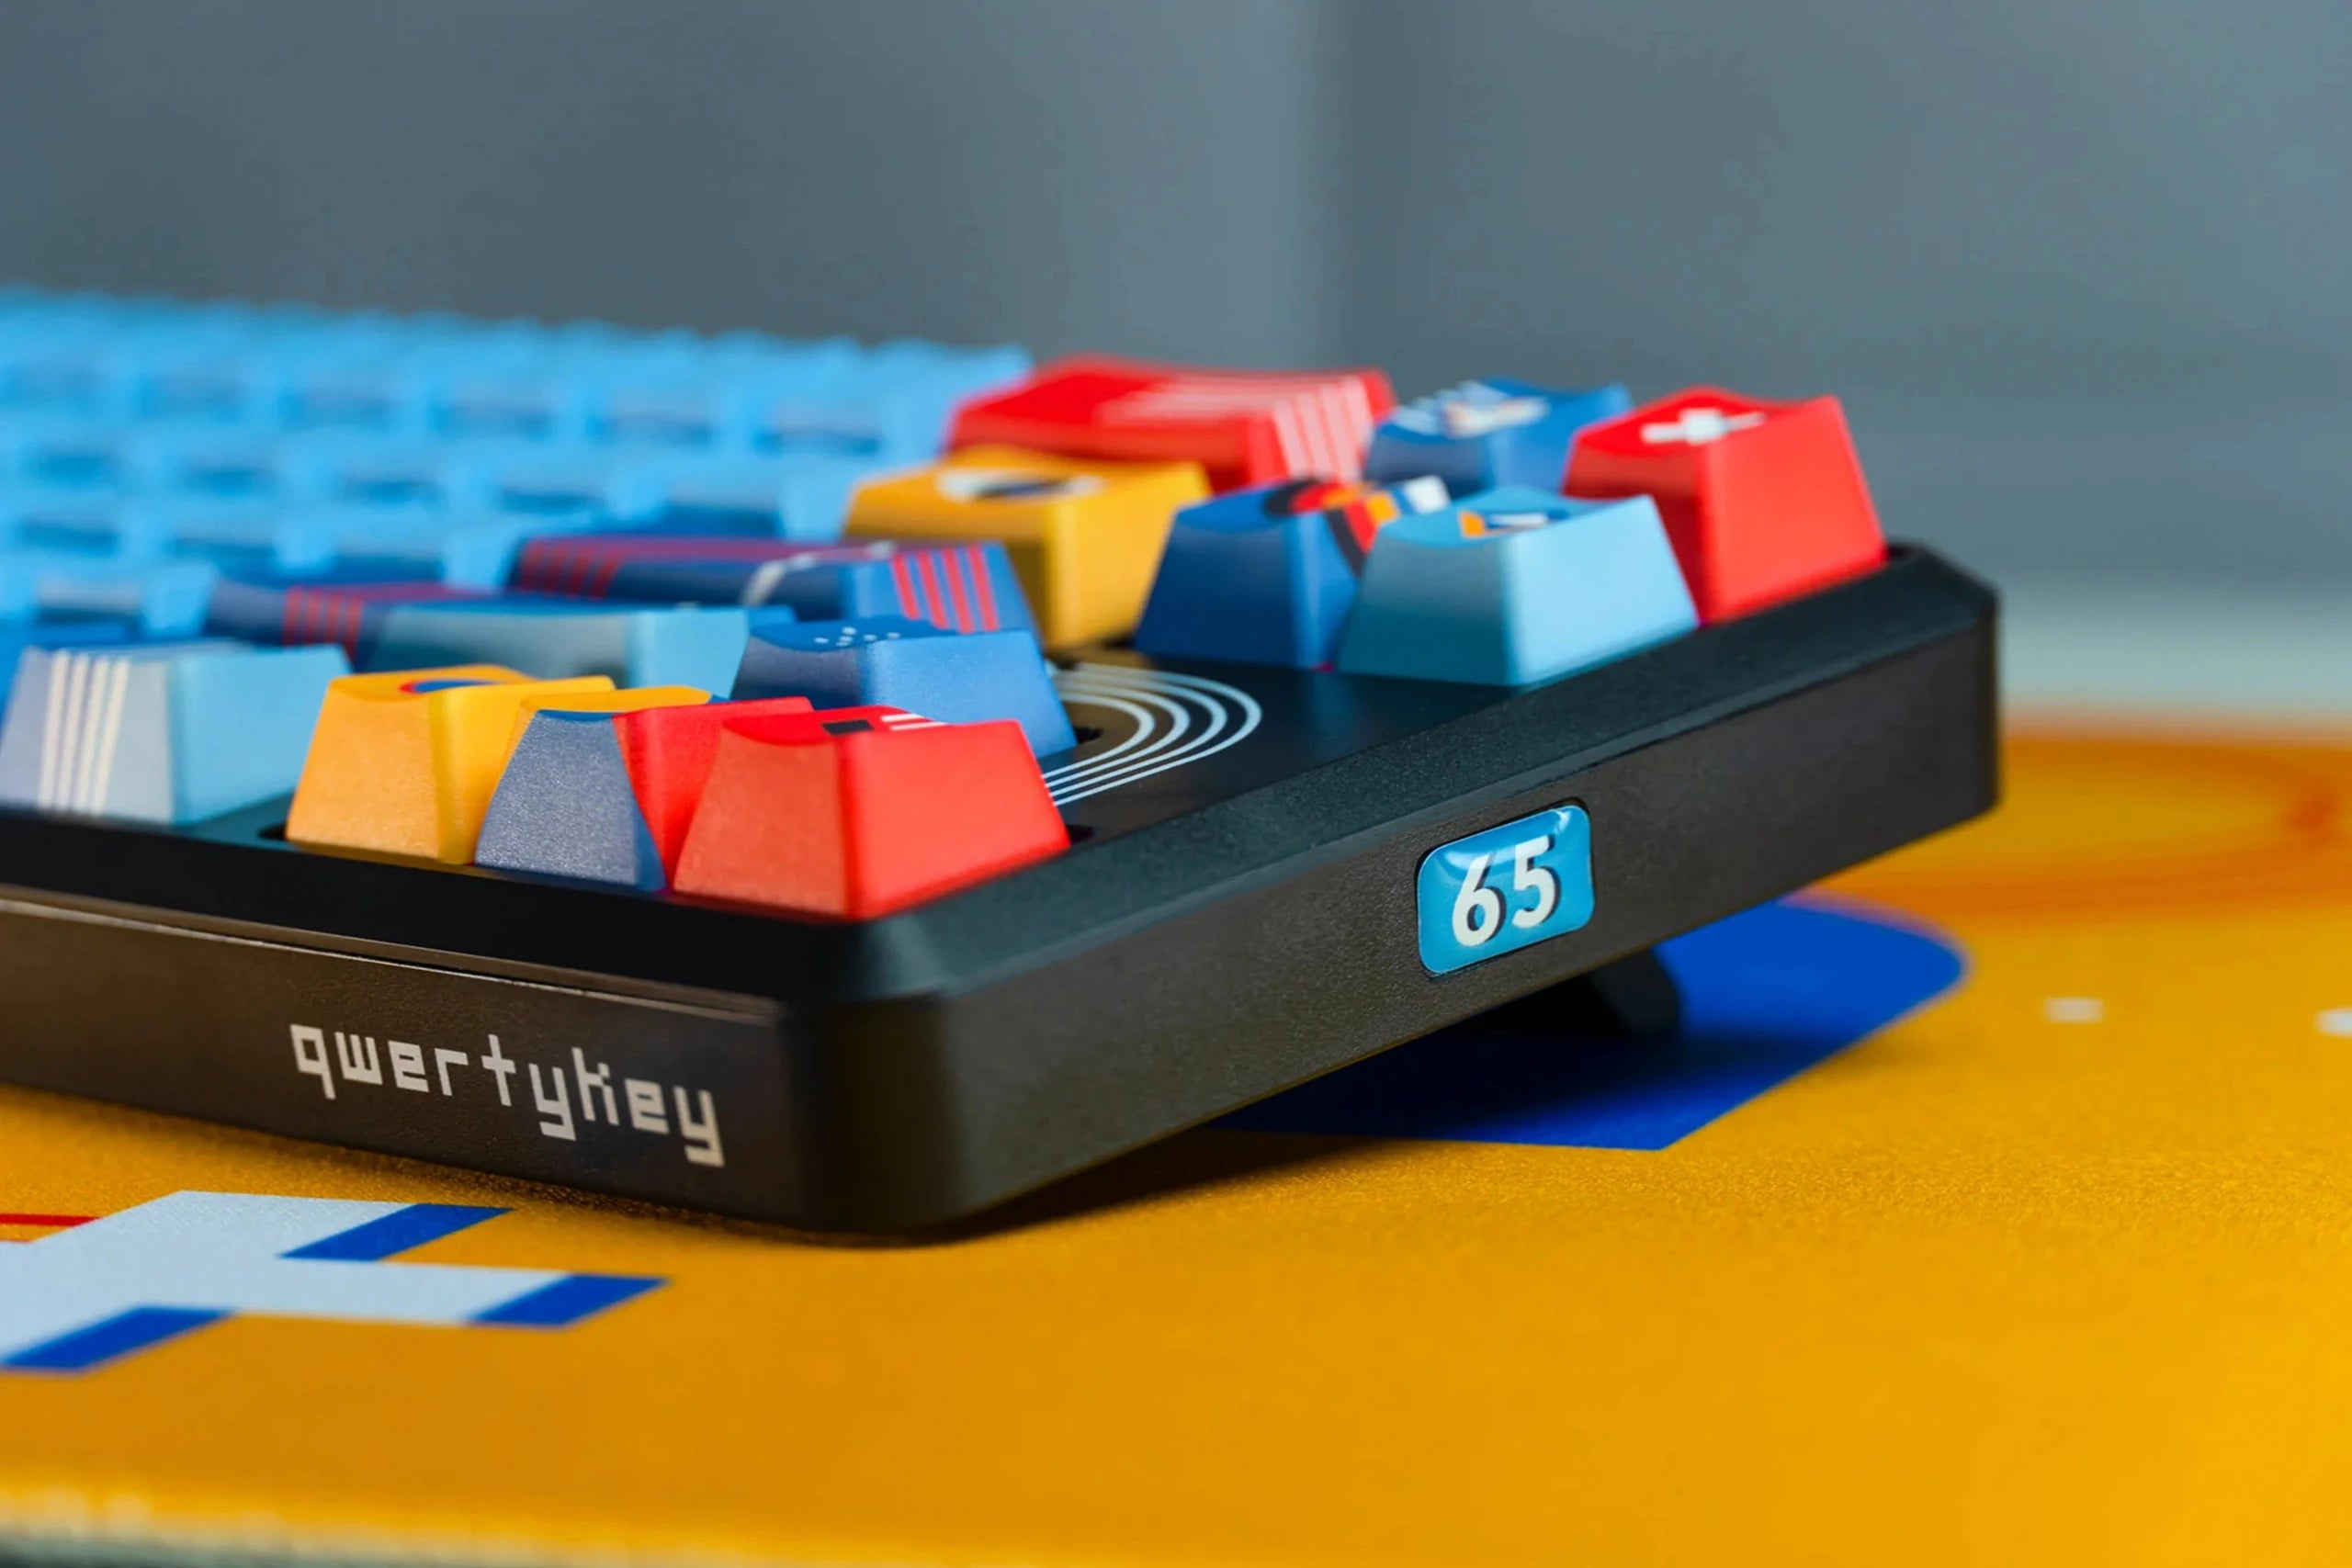 QwertyKey65 Metric Hotswap RGB Mechanical Gaming Keyboard 